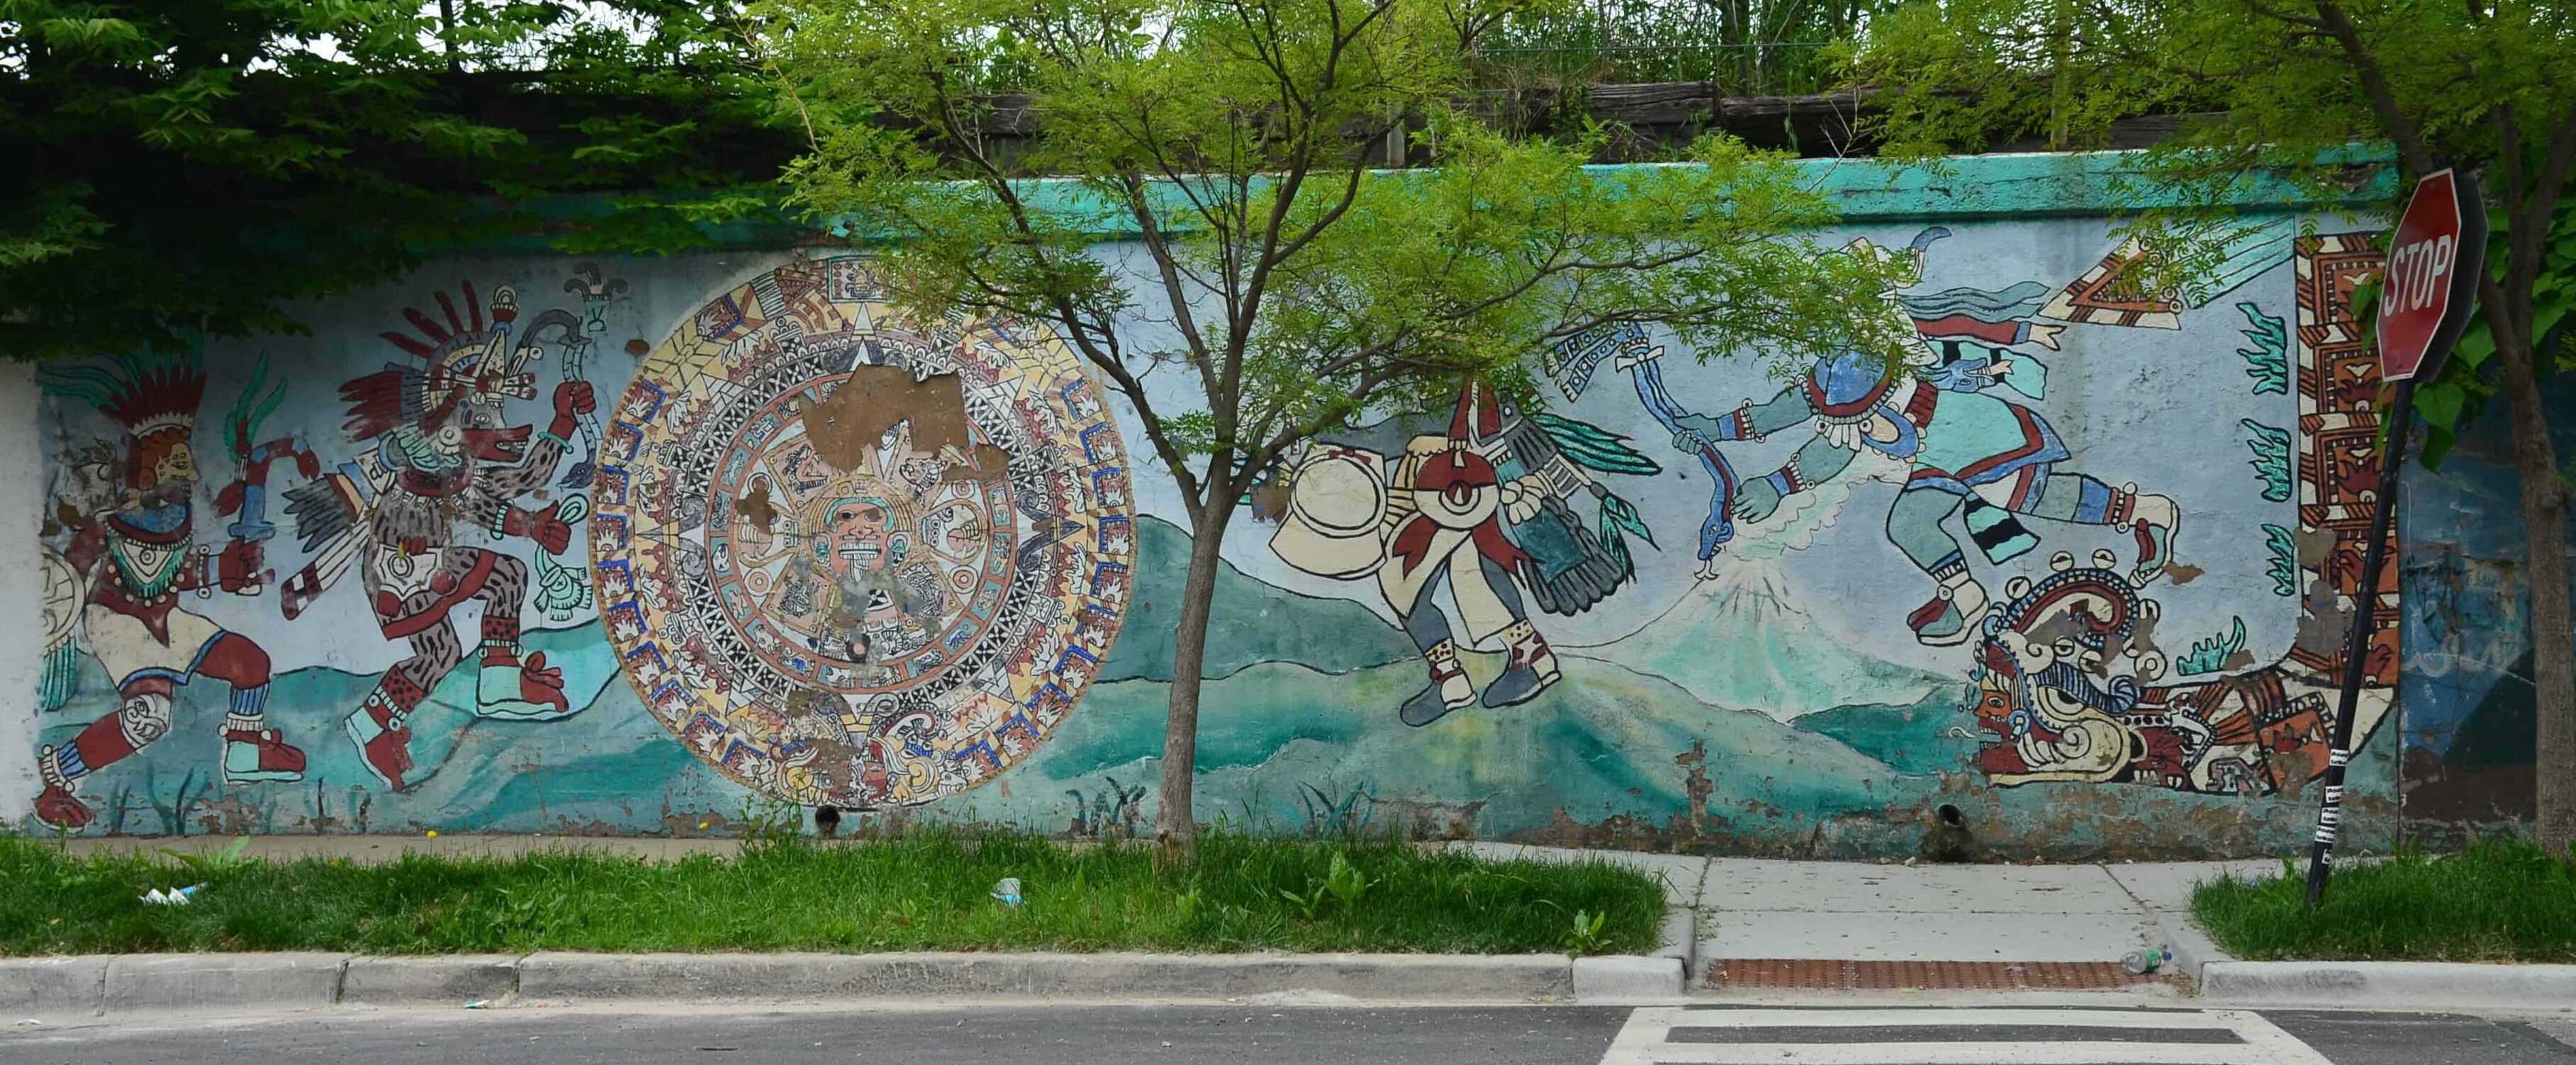 Mural between Allport and Blue Island